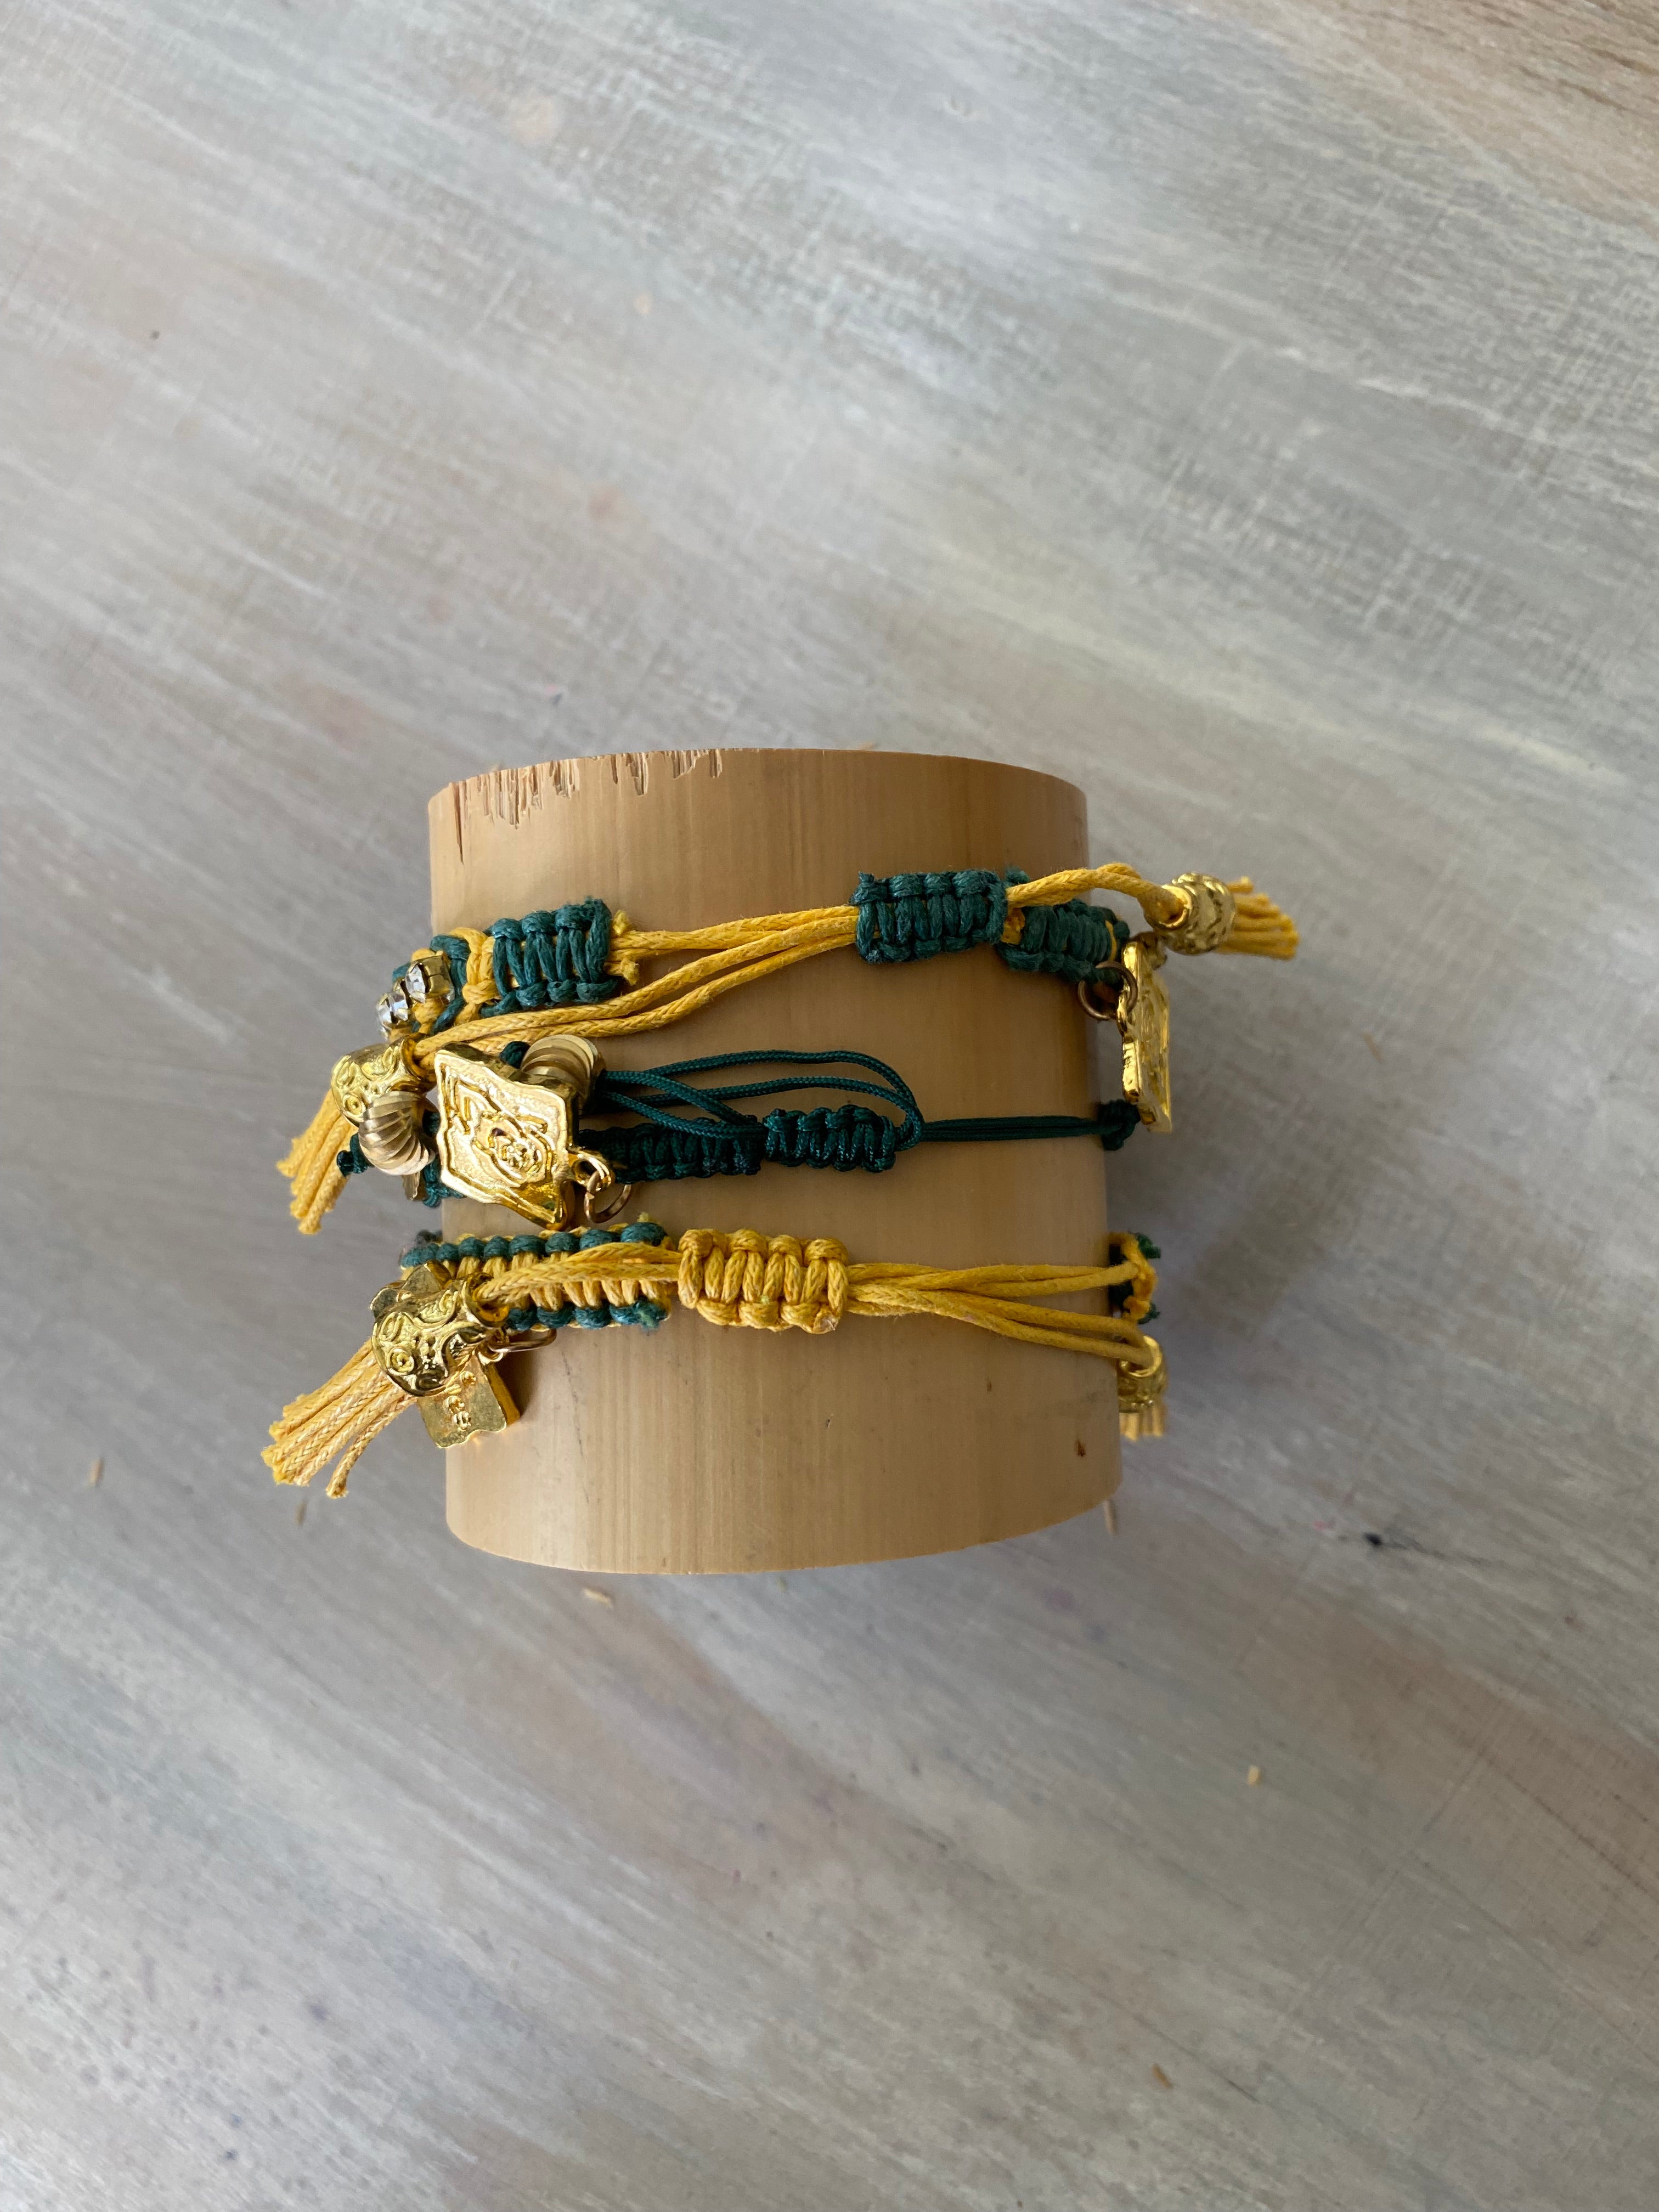 Game Day: Teal Green & Athletic Gold - Macrame String Bracelet Set